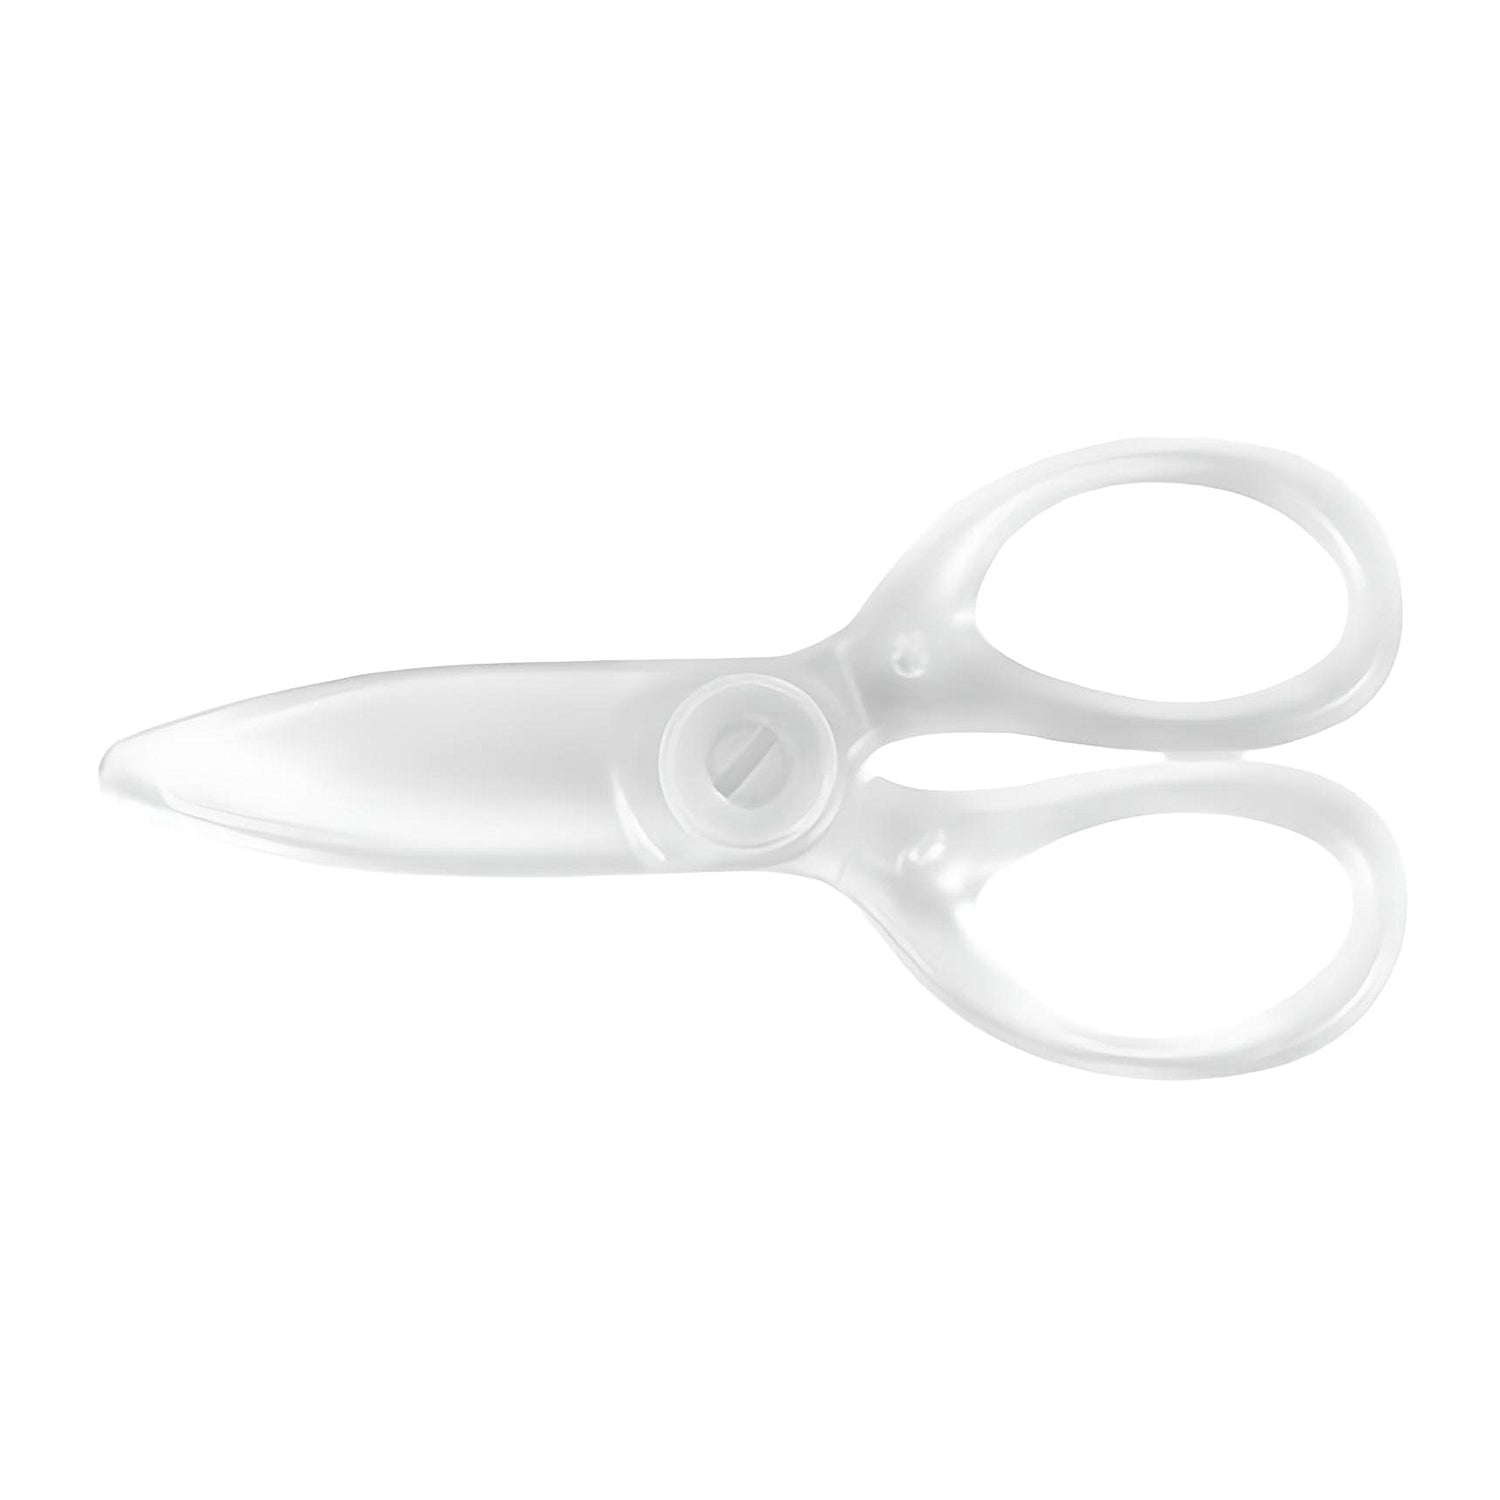 https://www.artifulboutique.com/cdn/shop/products/Kokuyo_Plastic_Scissors_Transparent_1500x.jpg?v=1680548731